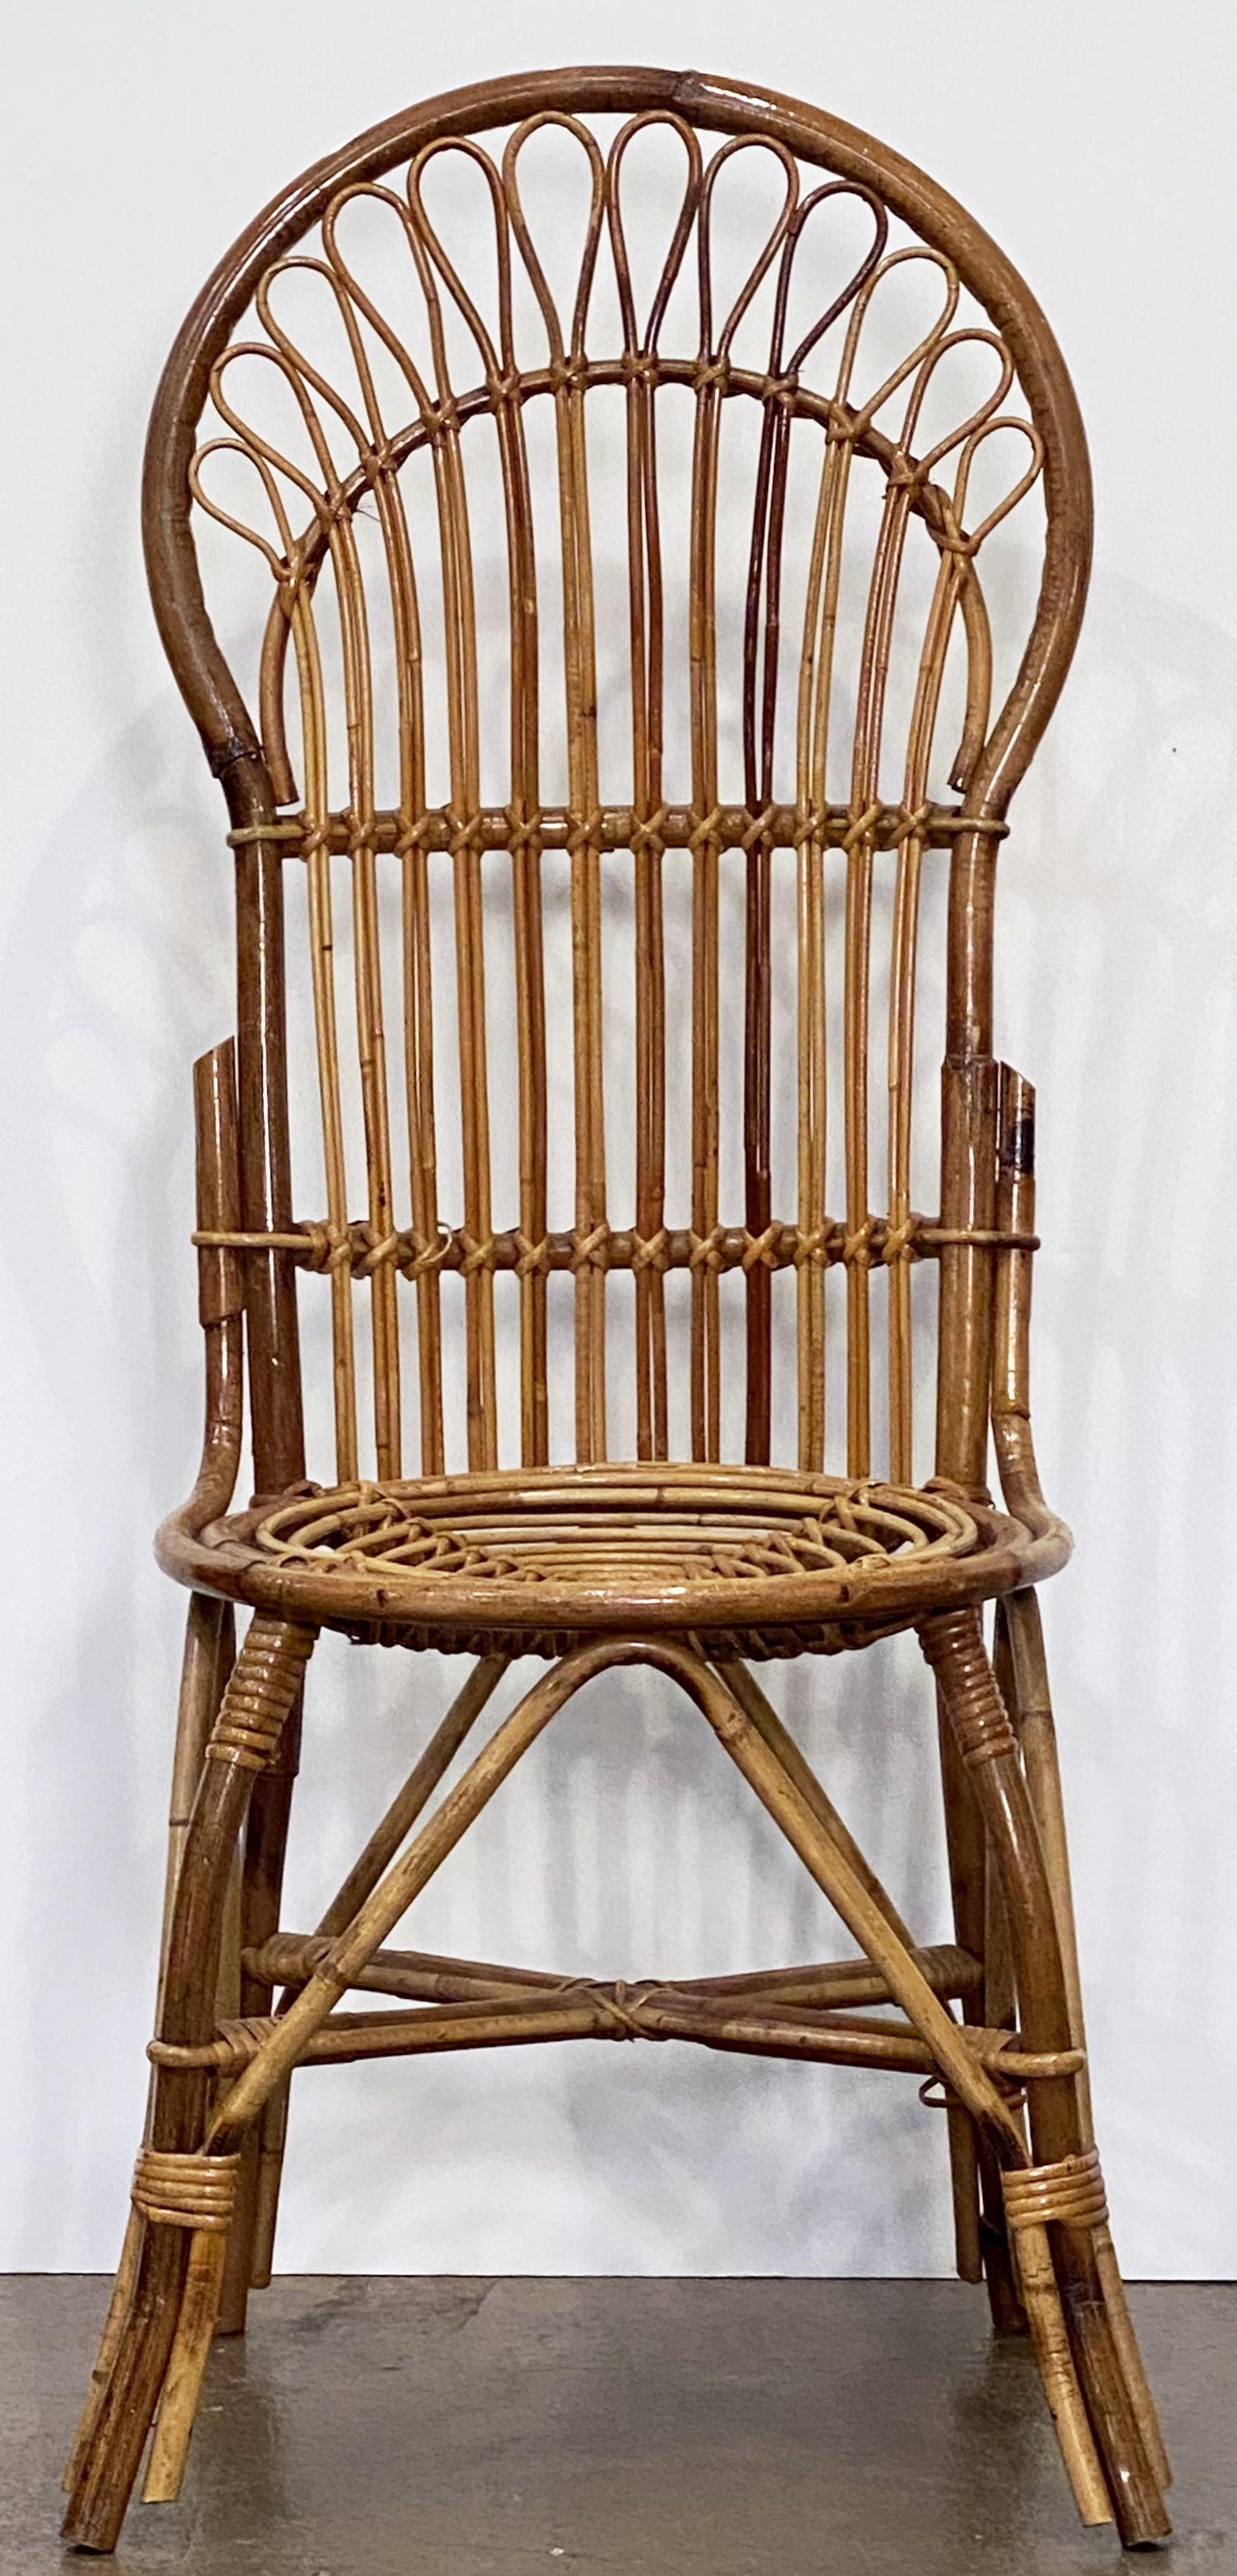 Une belle chaise italienne vintage à dossier en éventail du milieu du 20e siècle, en rotin tressé et bambou, avec un design élégant au niveau du dossier, du siège et des pieds.

Deux disponibles.